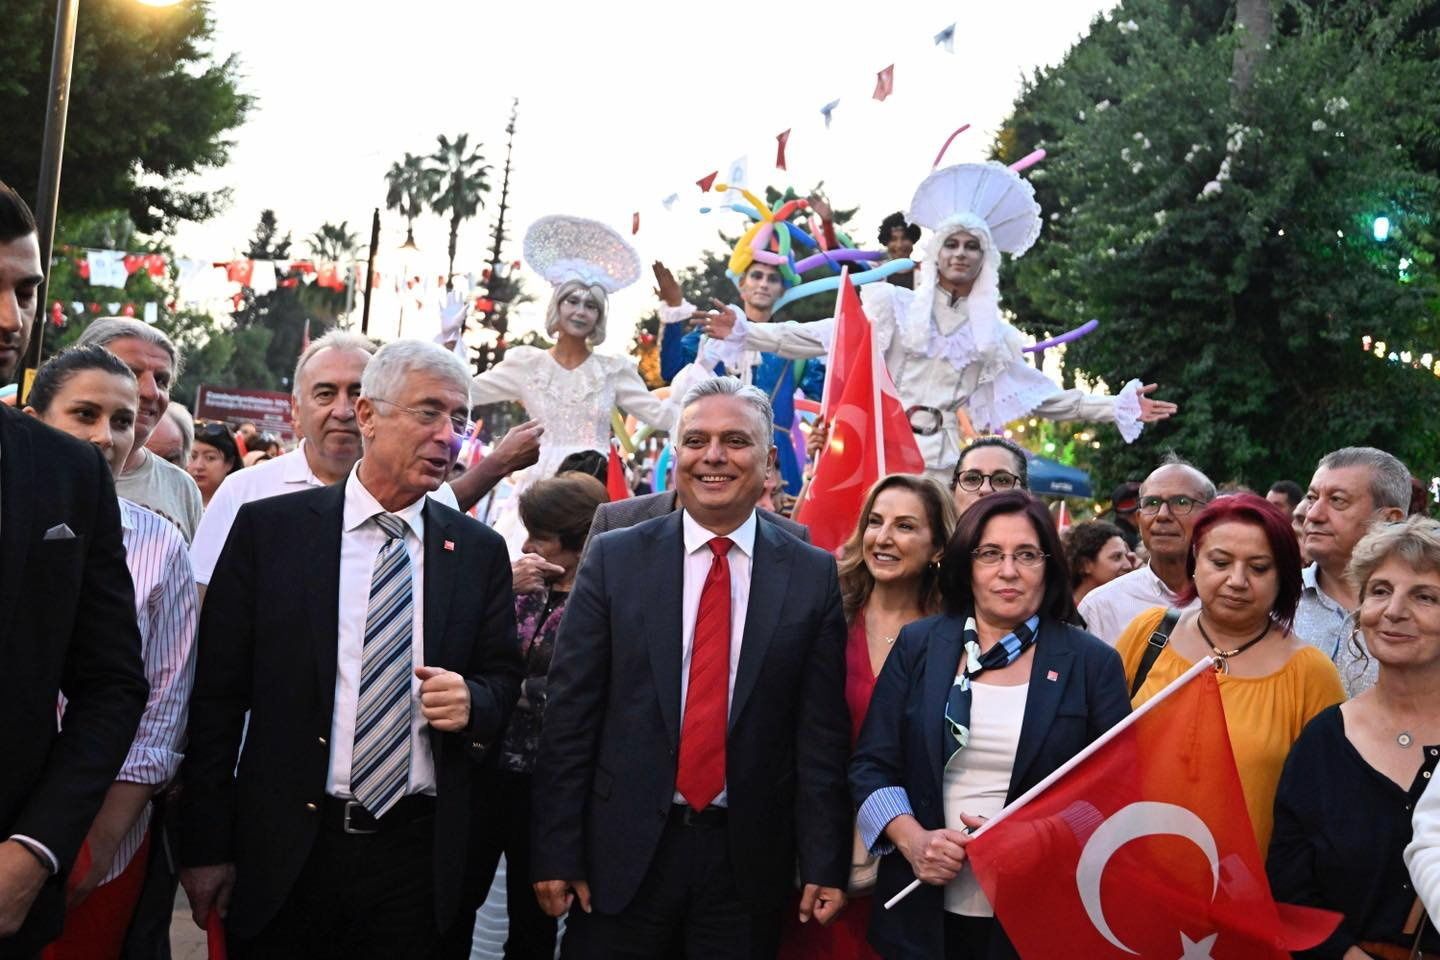 Cork Belediye Başkanı Türkiye’deki Eski Şehir Festivalini ziyaret etti